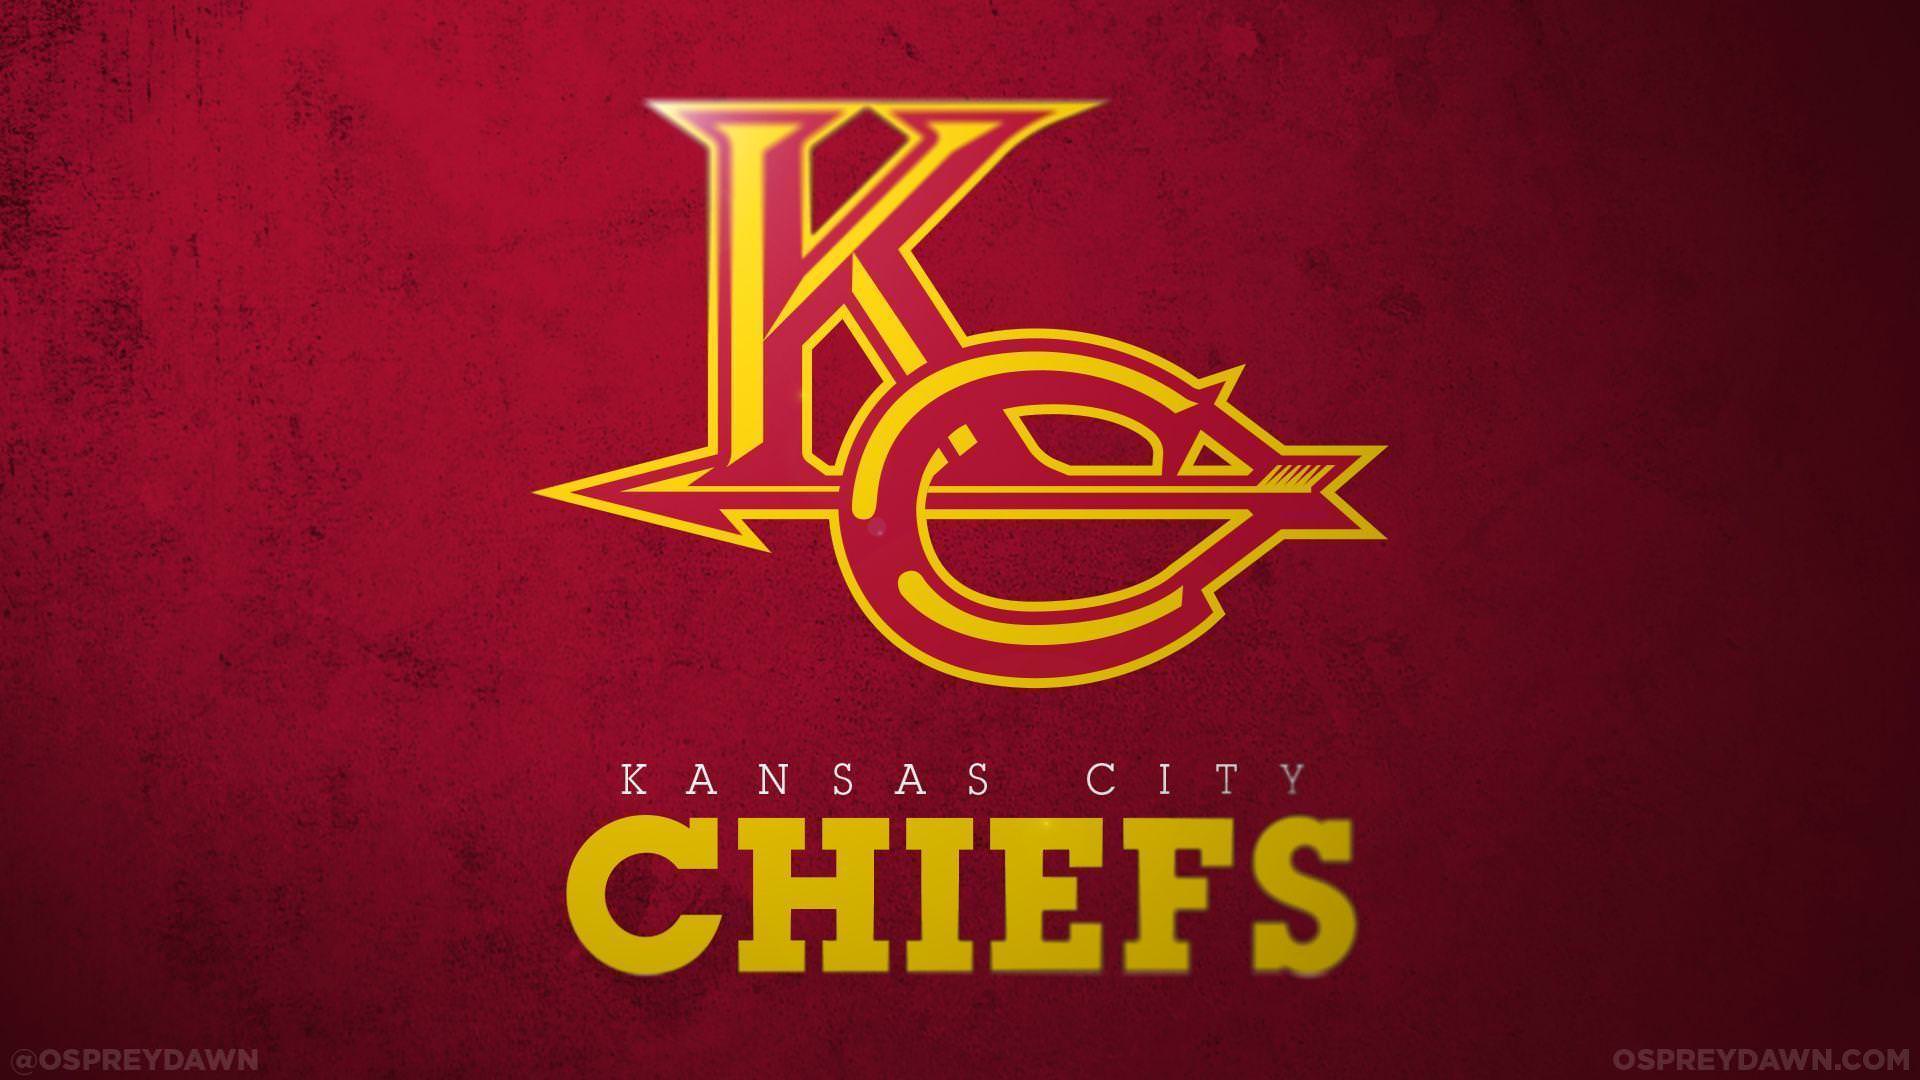 Its Wallpaper WINSday   The Kansas City Chiefs  Facebook